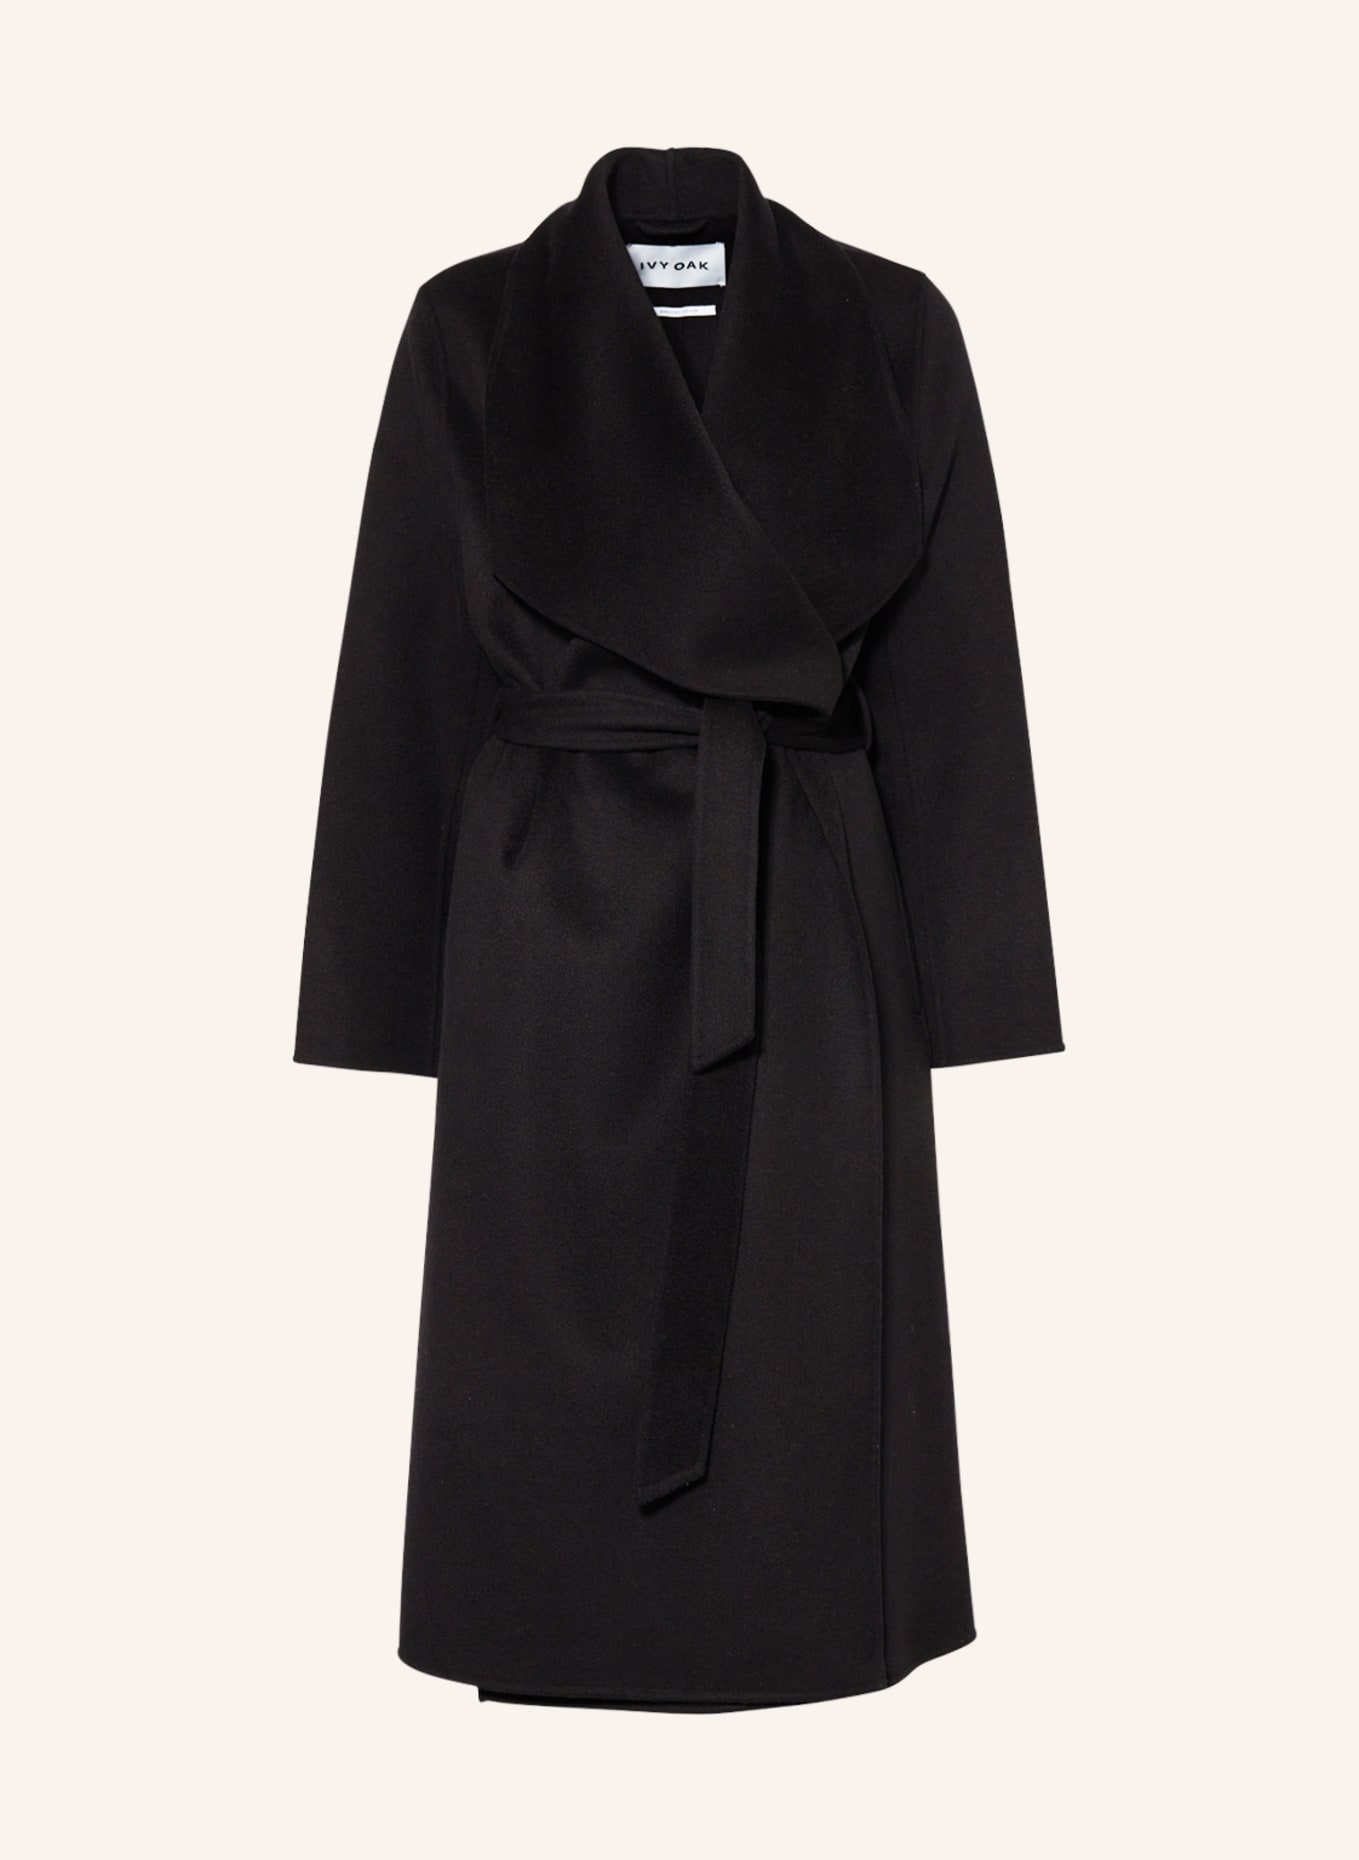 IVY OAK Wool coat CARRIE ROSE, Color: BLACK (Image 1)